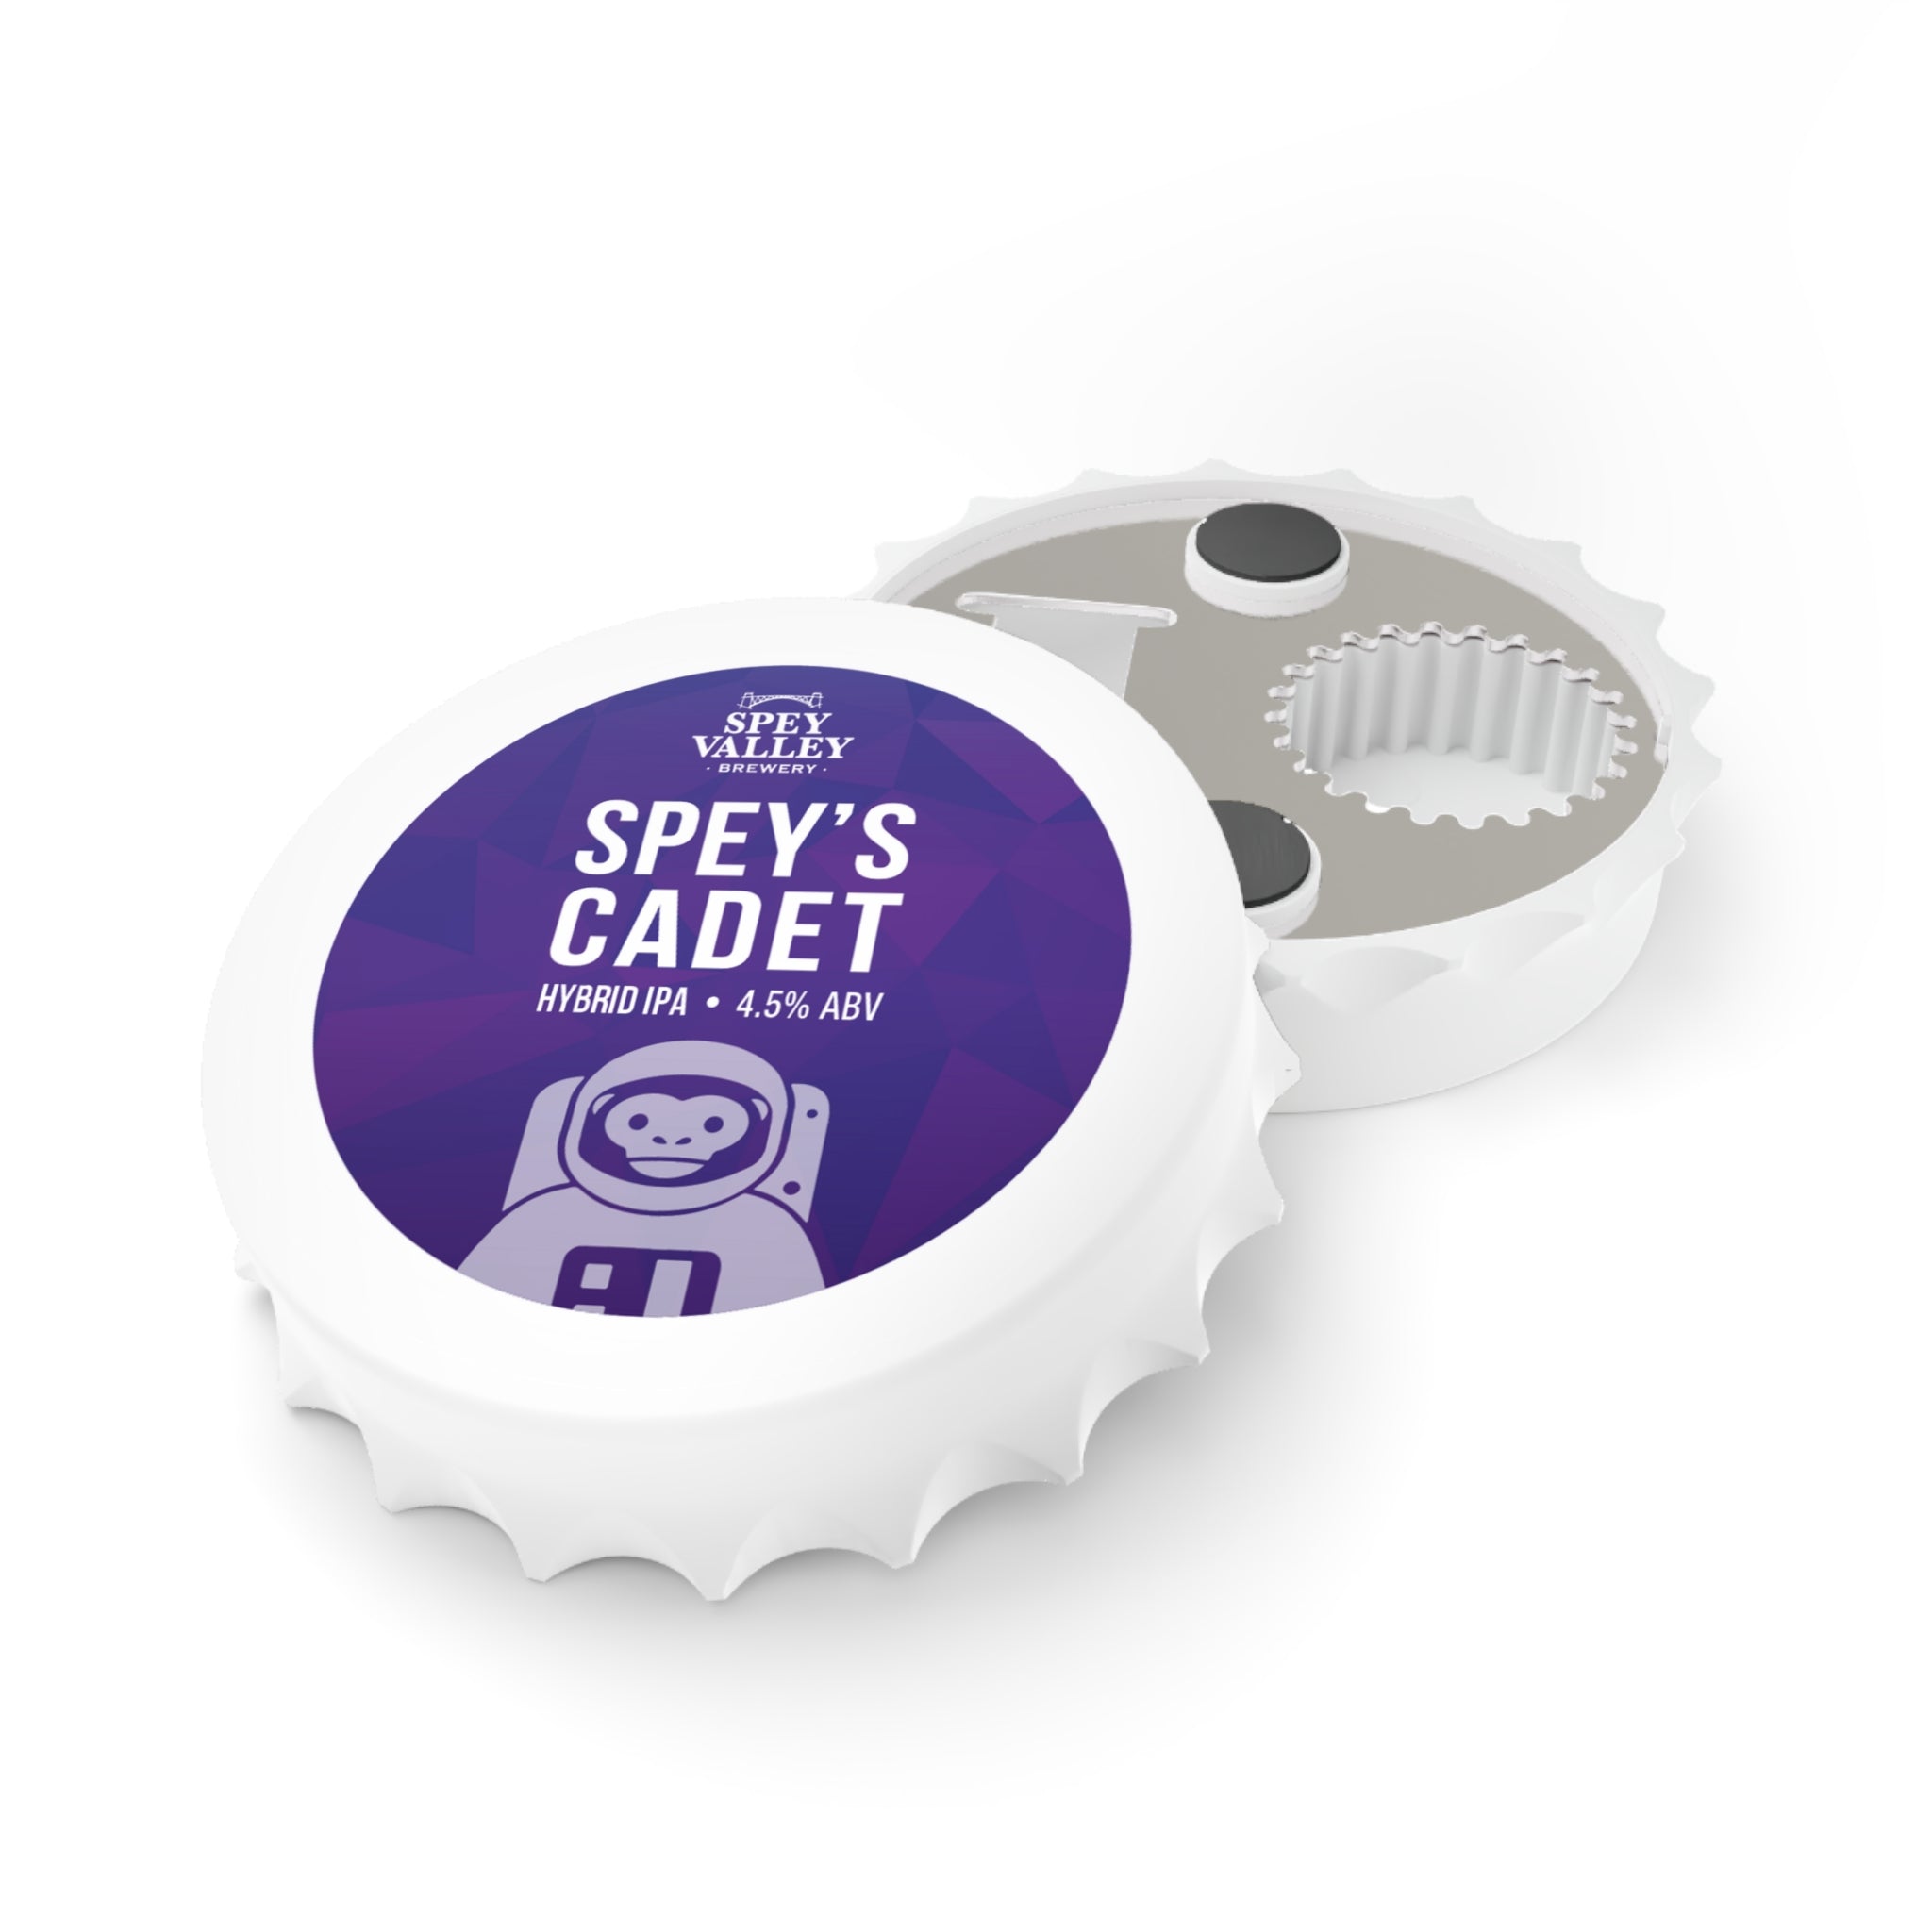 Spey's Cadet Bottle Opener